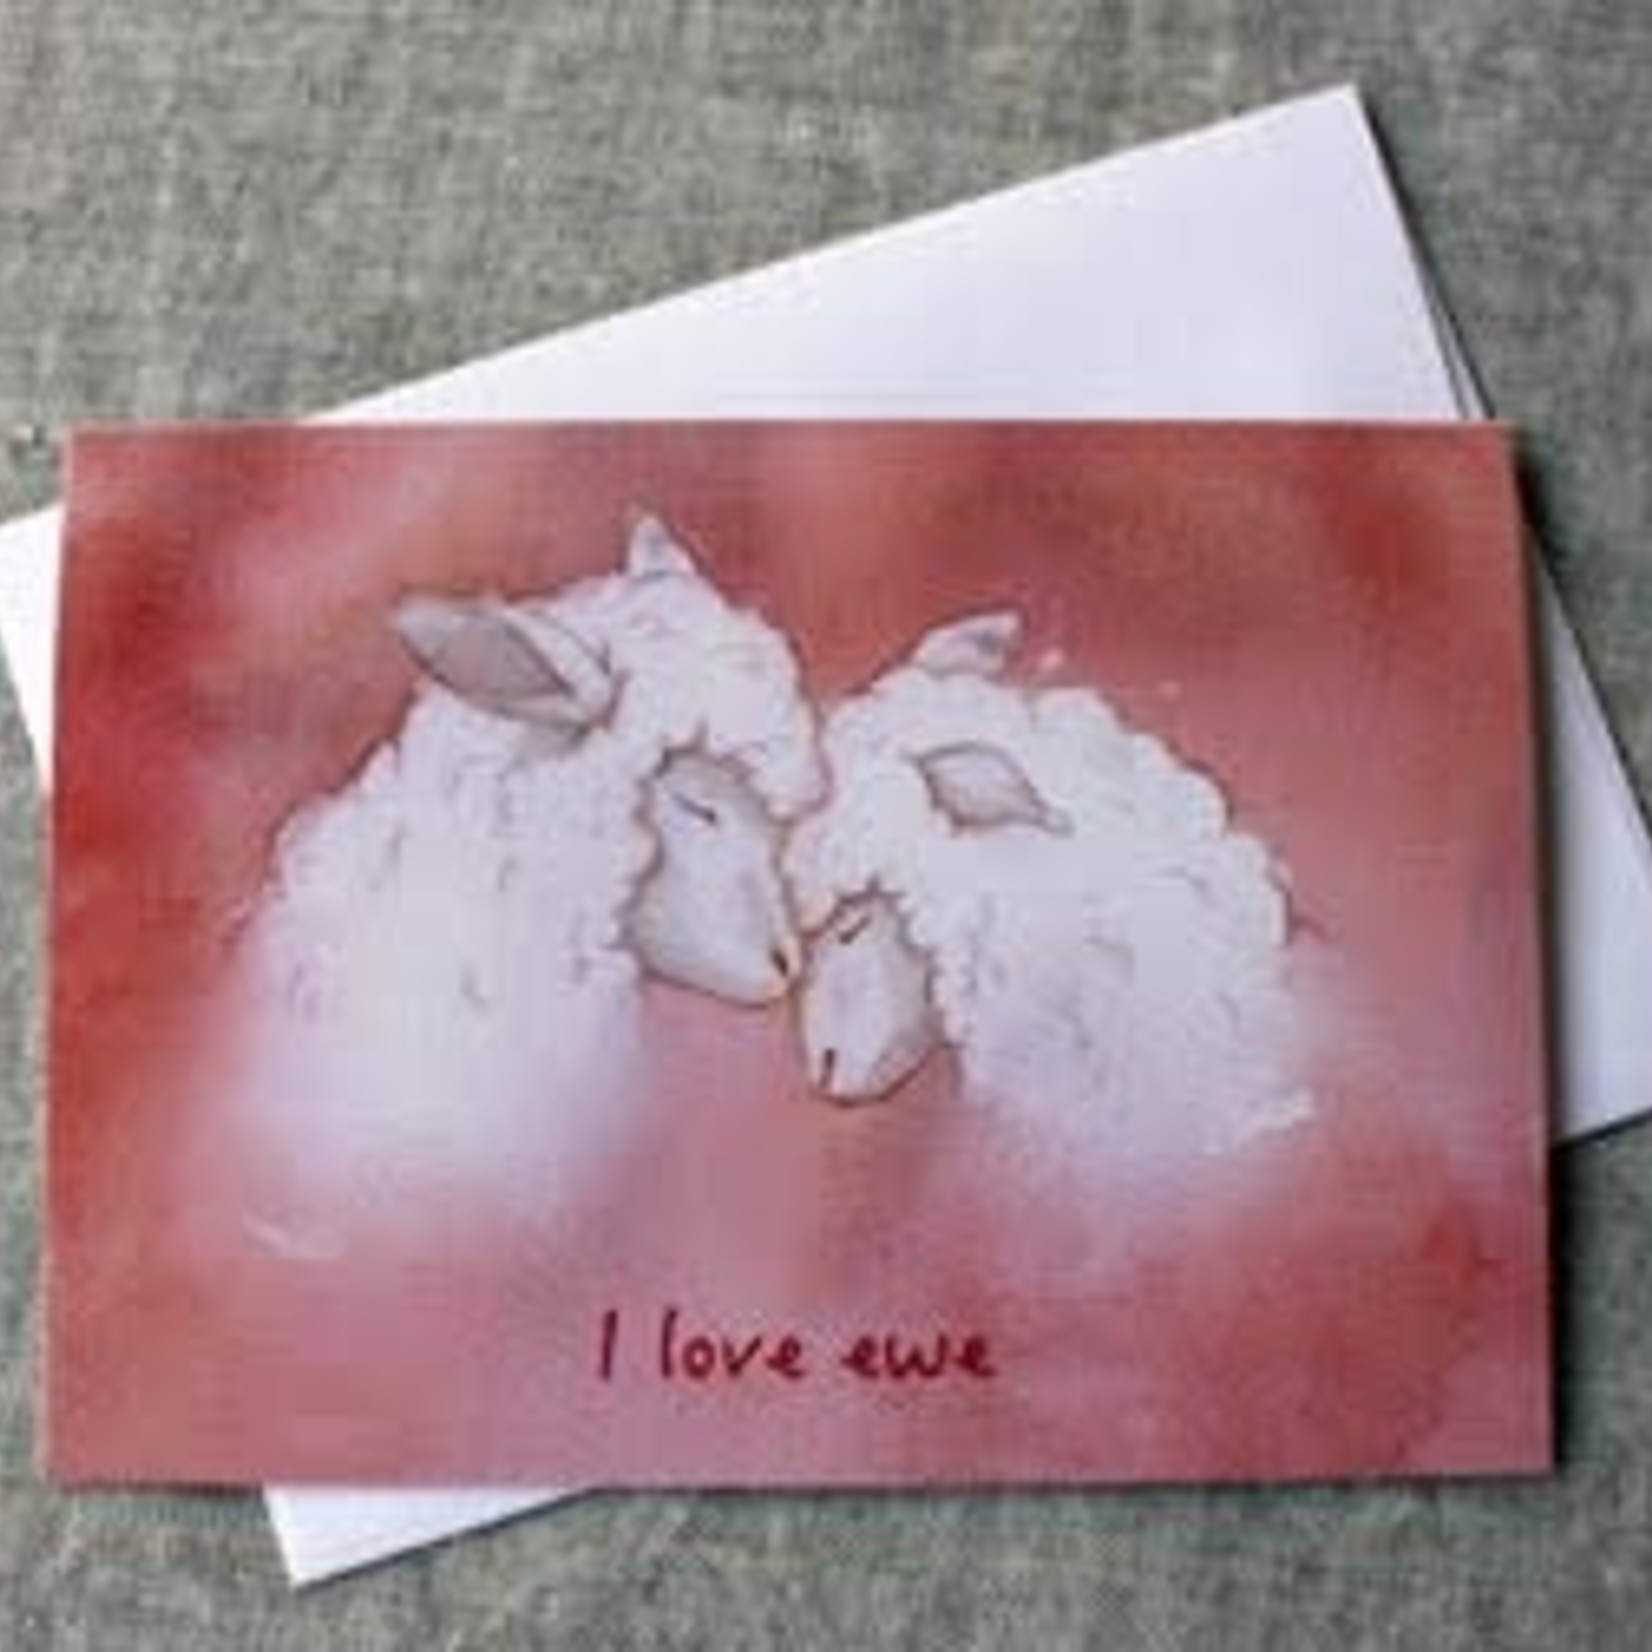 NNK Press Greeting Card "I Love Ewe"